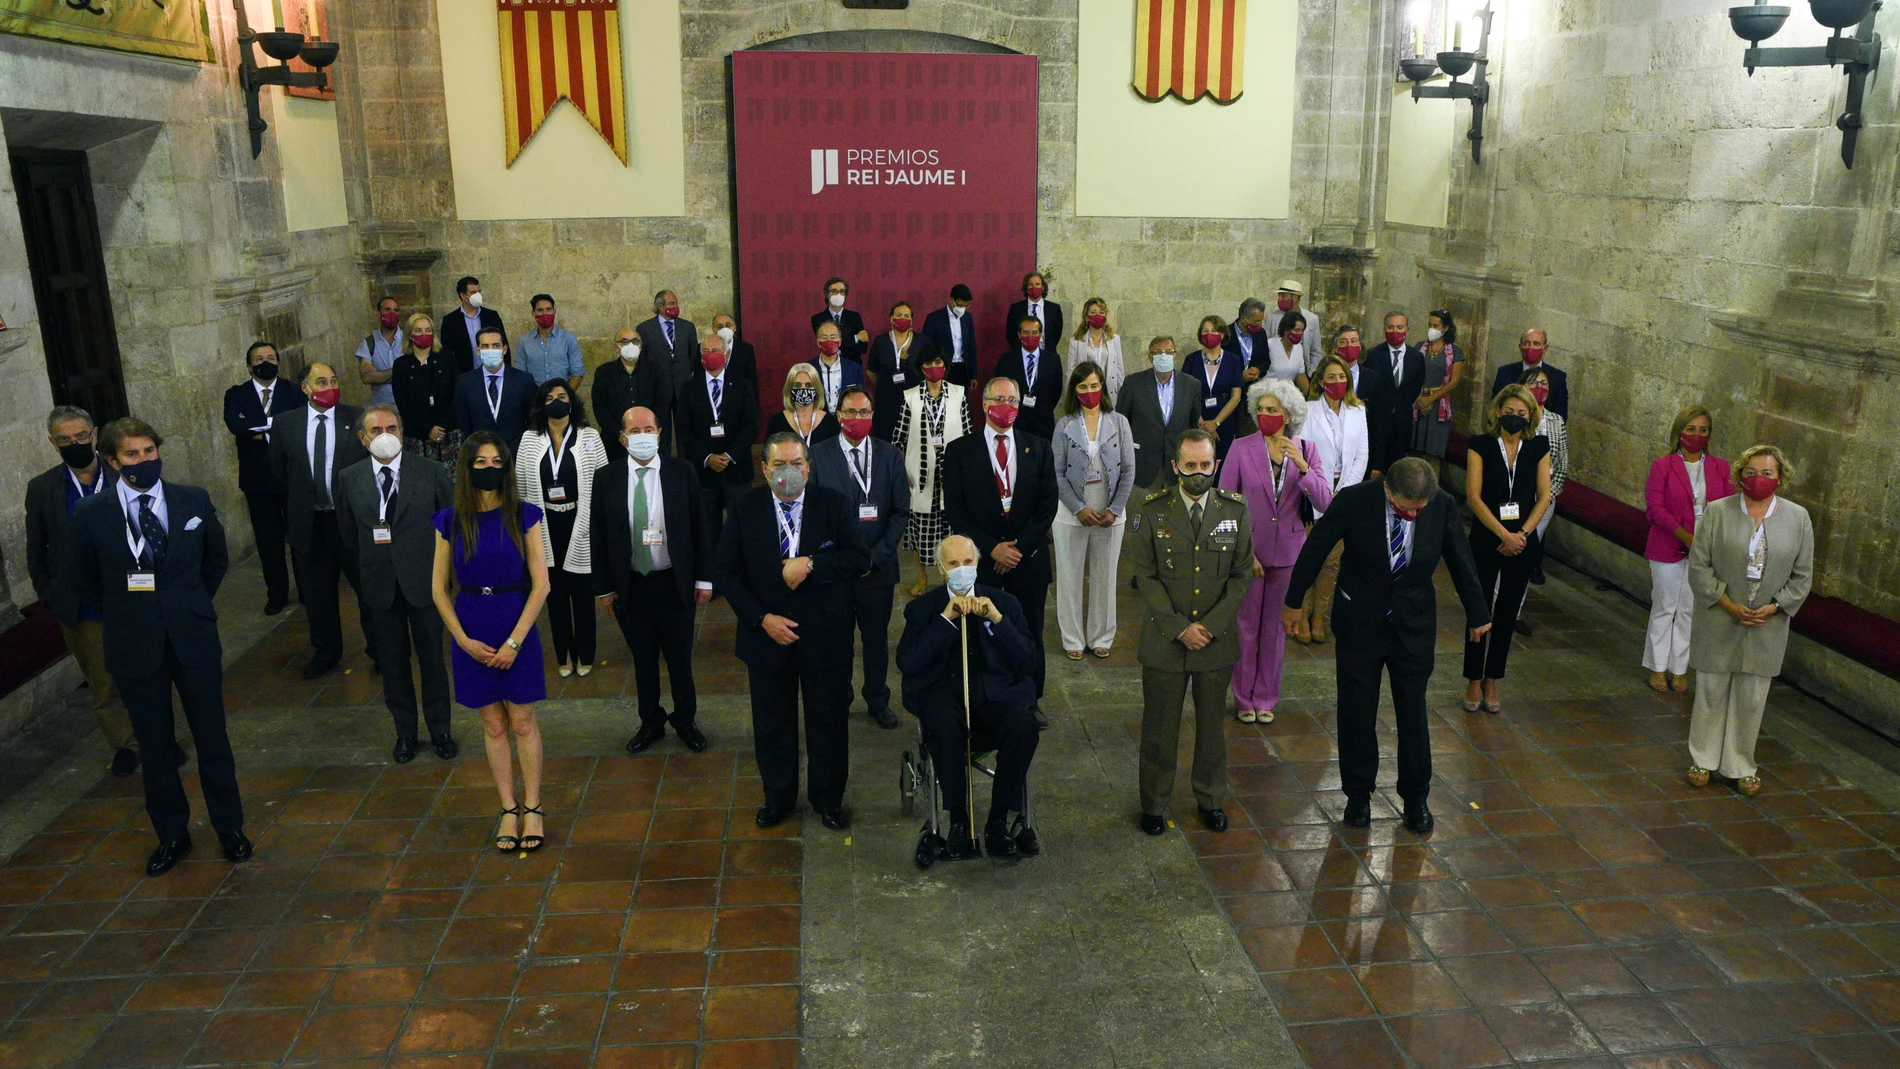 El vicepresidente la Fundación Premios Rei Jaume I, Vicente Boluda (3i) junto a otros miembros del jurado, posan el día de la deliberación de los jurados de la 33ª edición de los Premios Rei Jaime en el Antiguo Convento de Santo Domingo, a 7 de junio de 2021,en Valencia